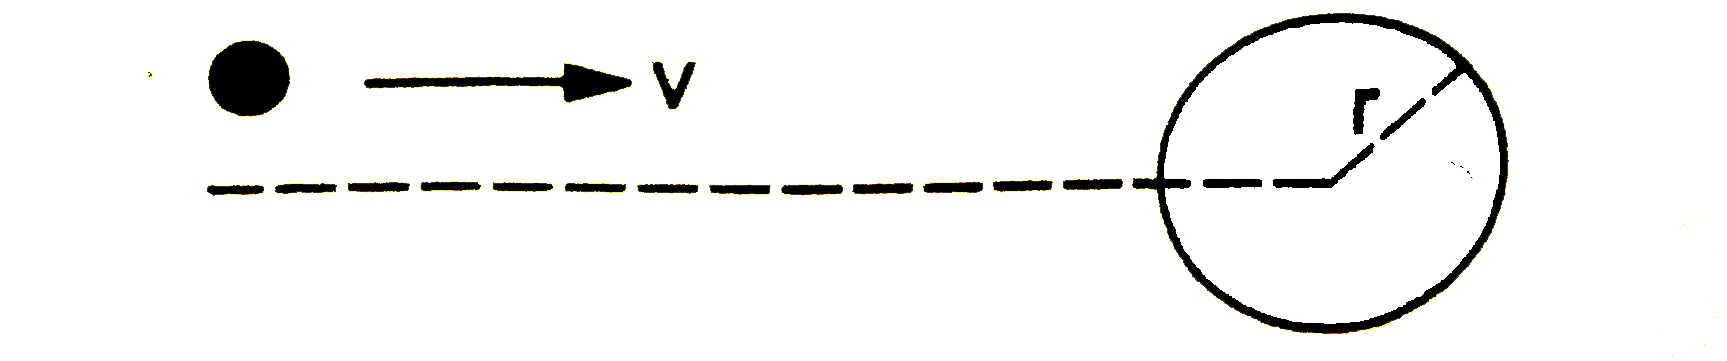 v वेग से चलता हुआ एक छोटा कण, प्रारंभ में स्थिर, समान द्रव्यमान एवं r त्रिज्या वाली एक गोलाकार वस्तु से प्रत्यास्थ टक्कर करता है। इस गोलाकार वस्तु का केंद्र, कण की गति की दिशा से rho(lt r) दूरी पर स्थित है (चित्र । दोनों के अंतिम वेग ज्ञात करें।